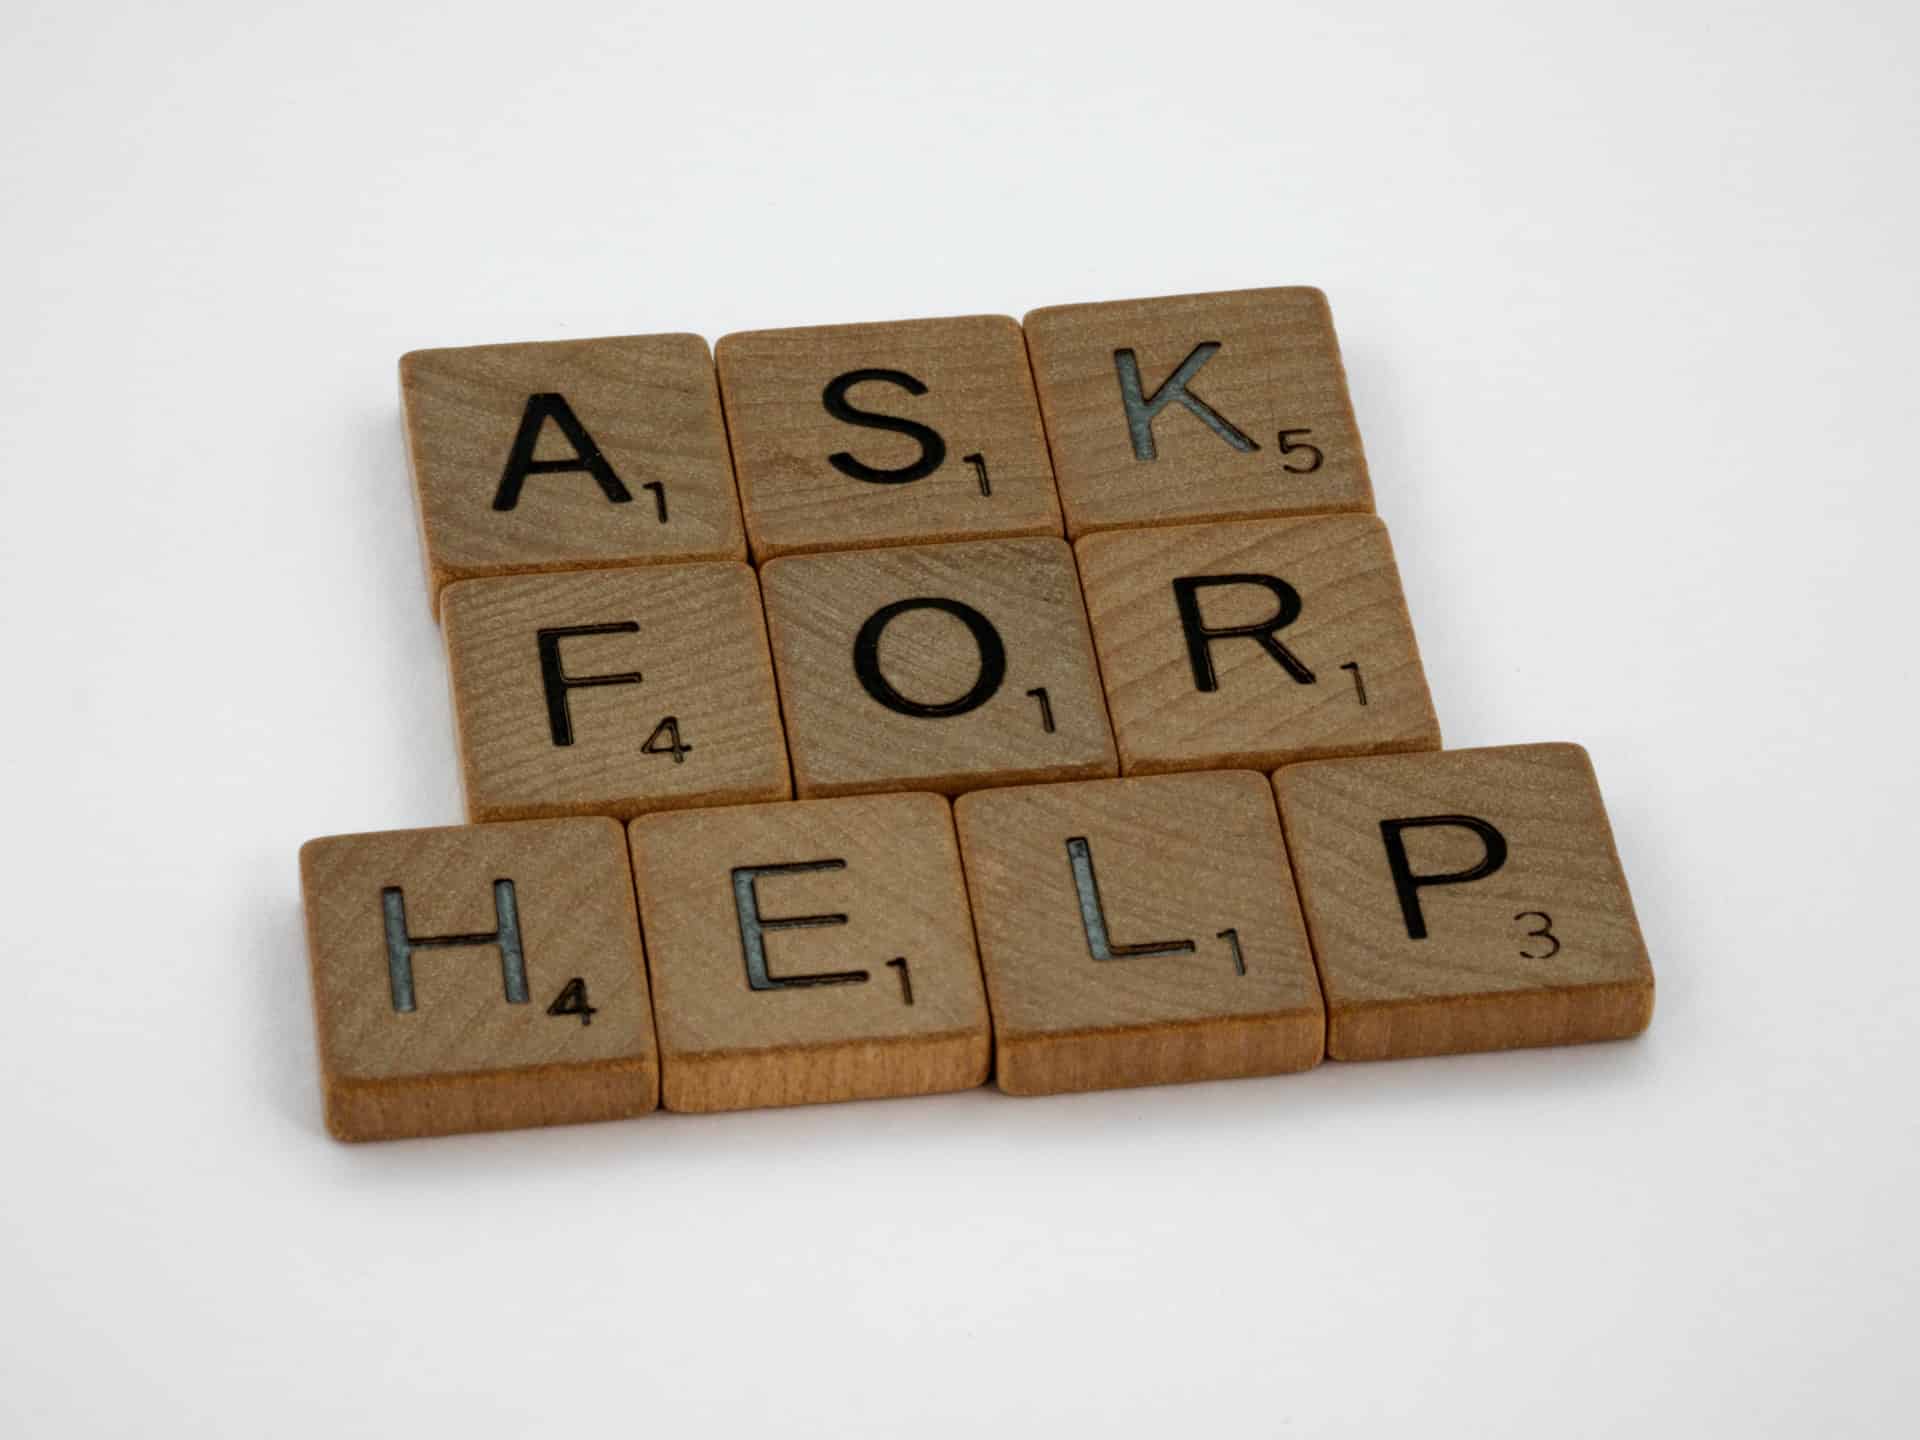 Ask for help written in scrabble bricks